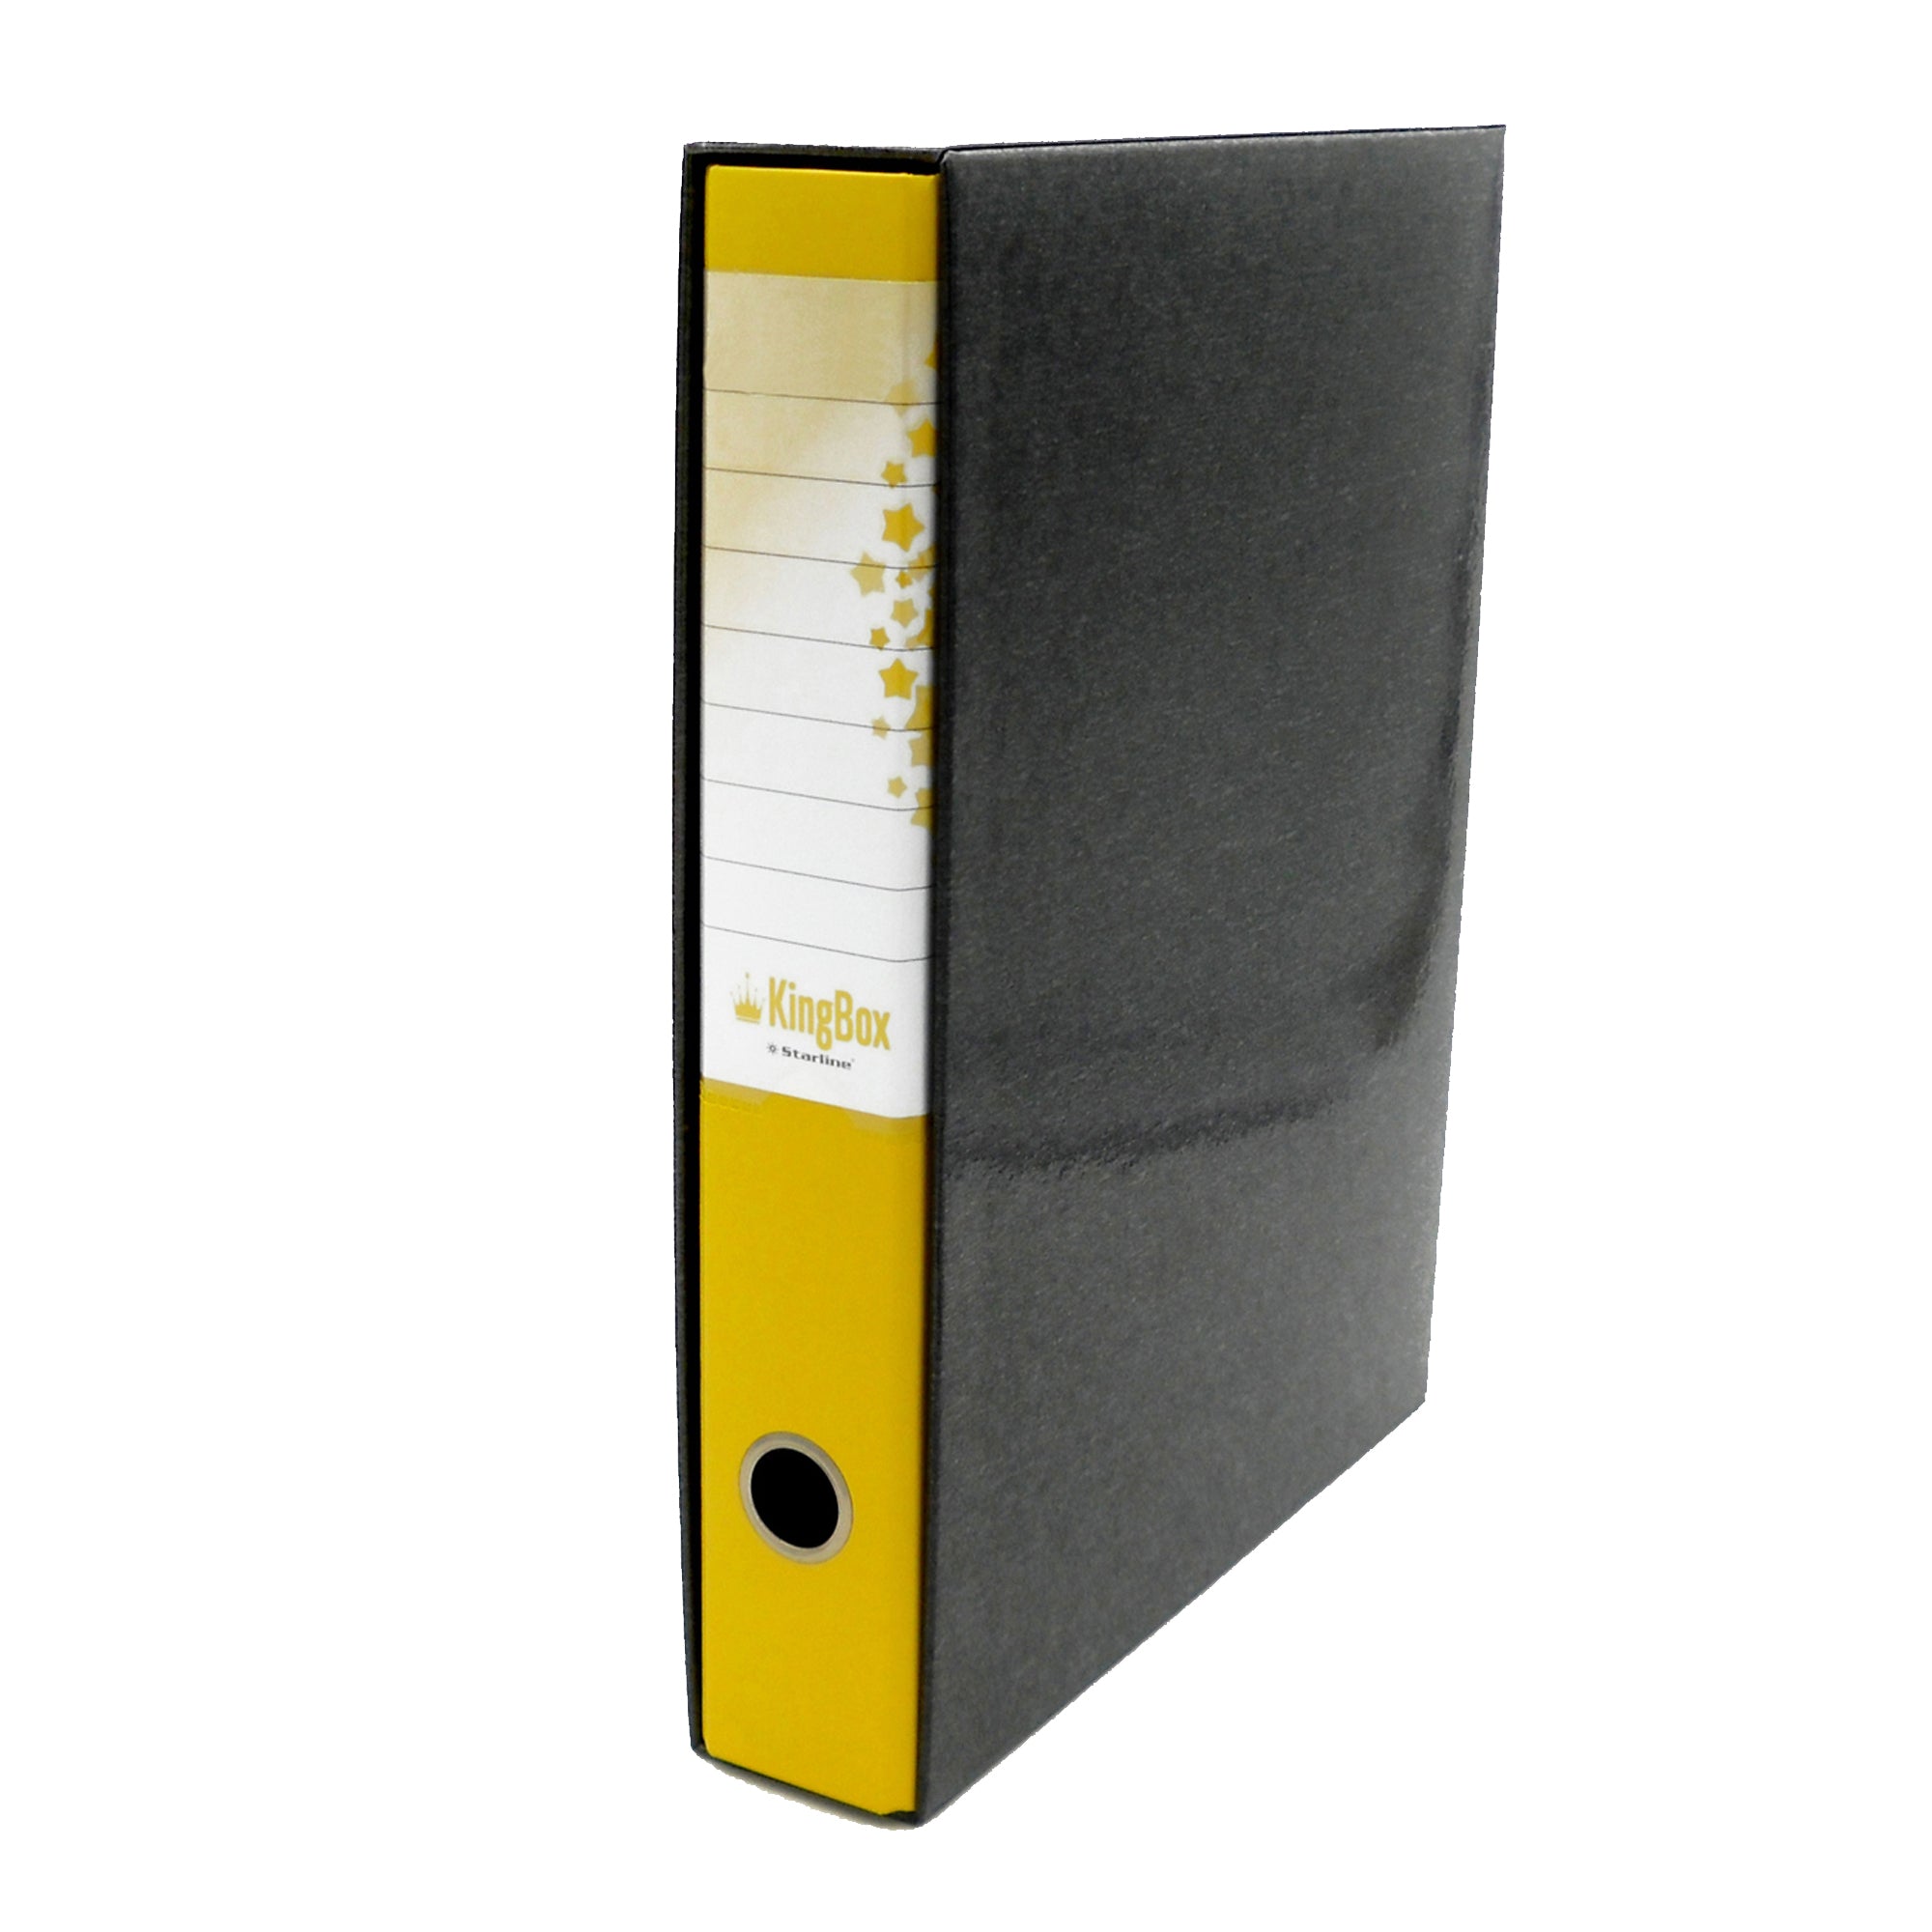 starline-registratore-kingbox-f-to-protocollo-dorso-5cm-giallo